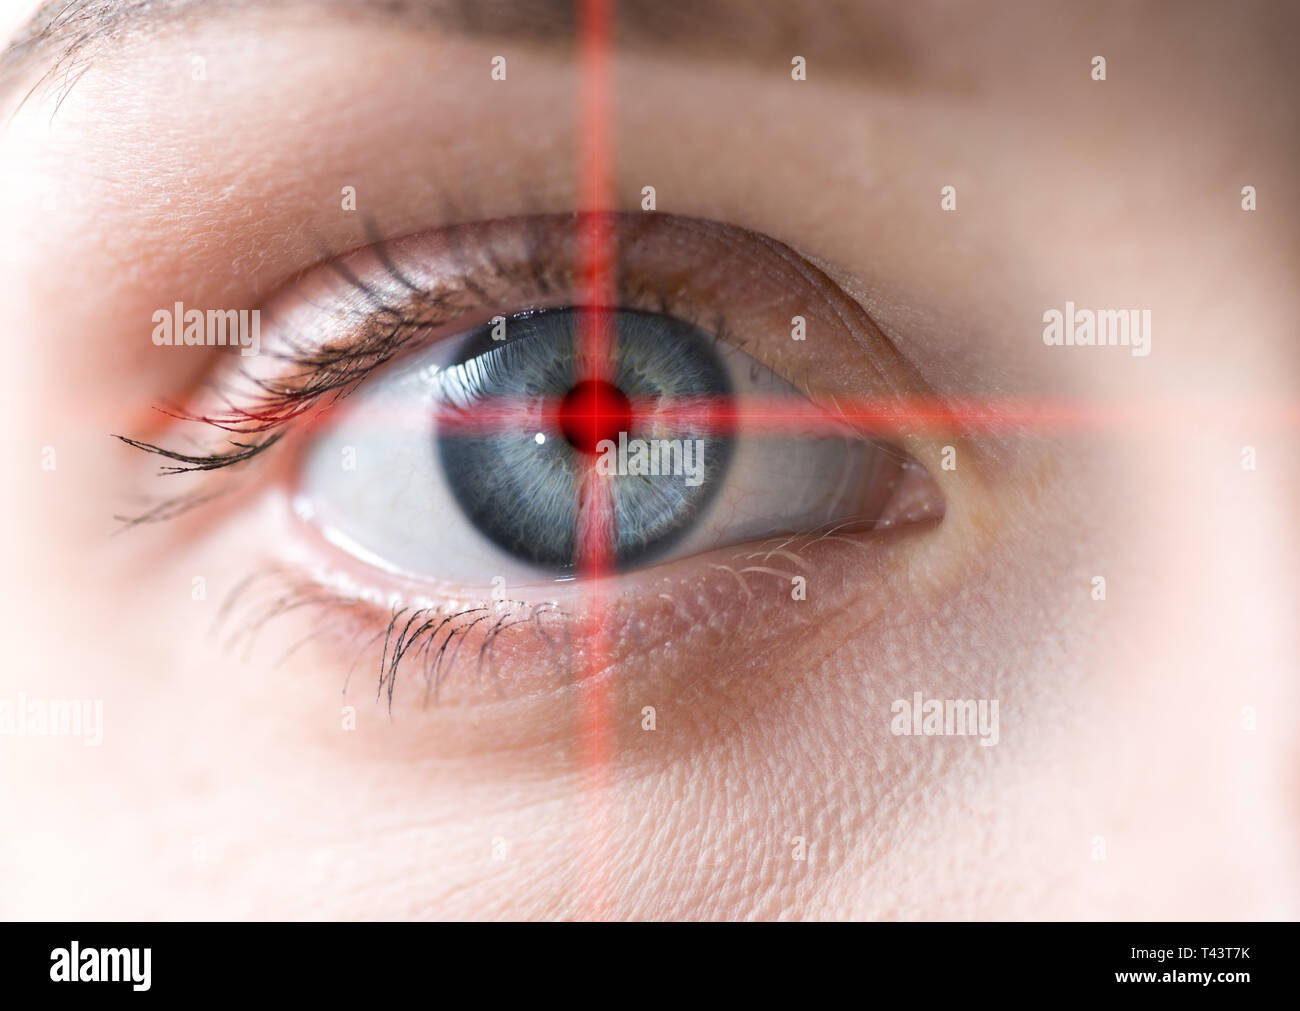 Human eye macro. Conceptual image. Stock Photo